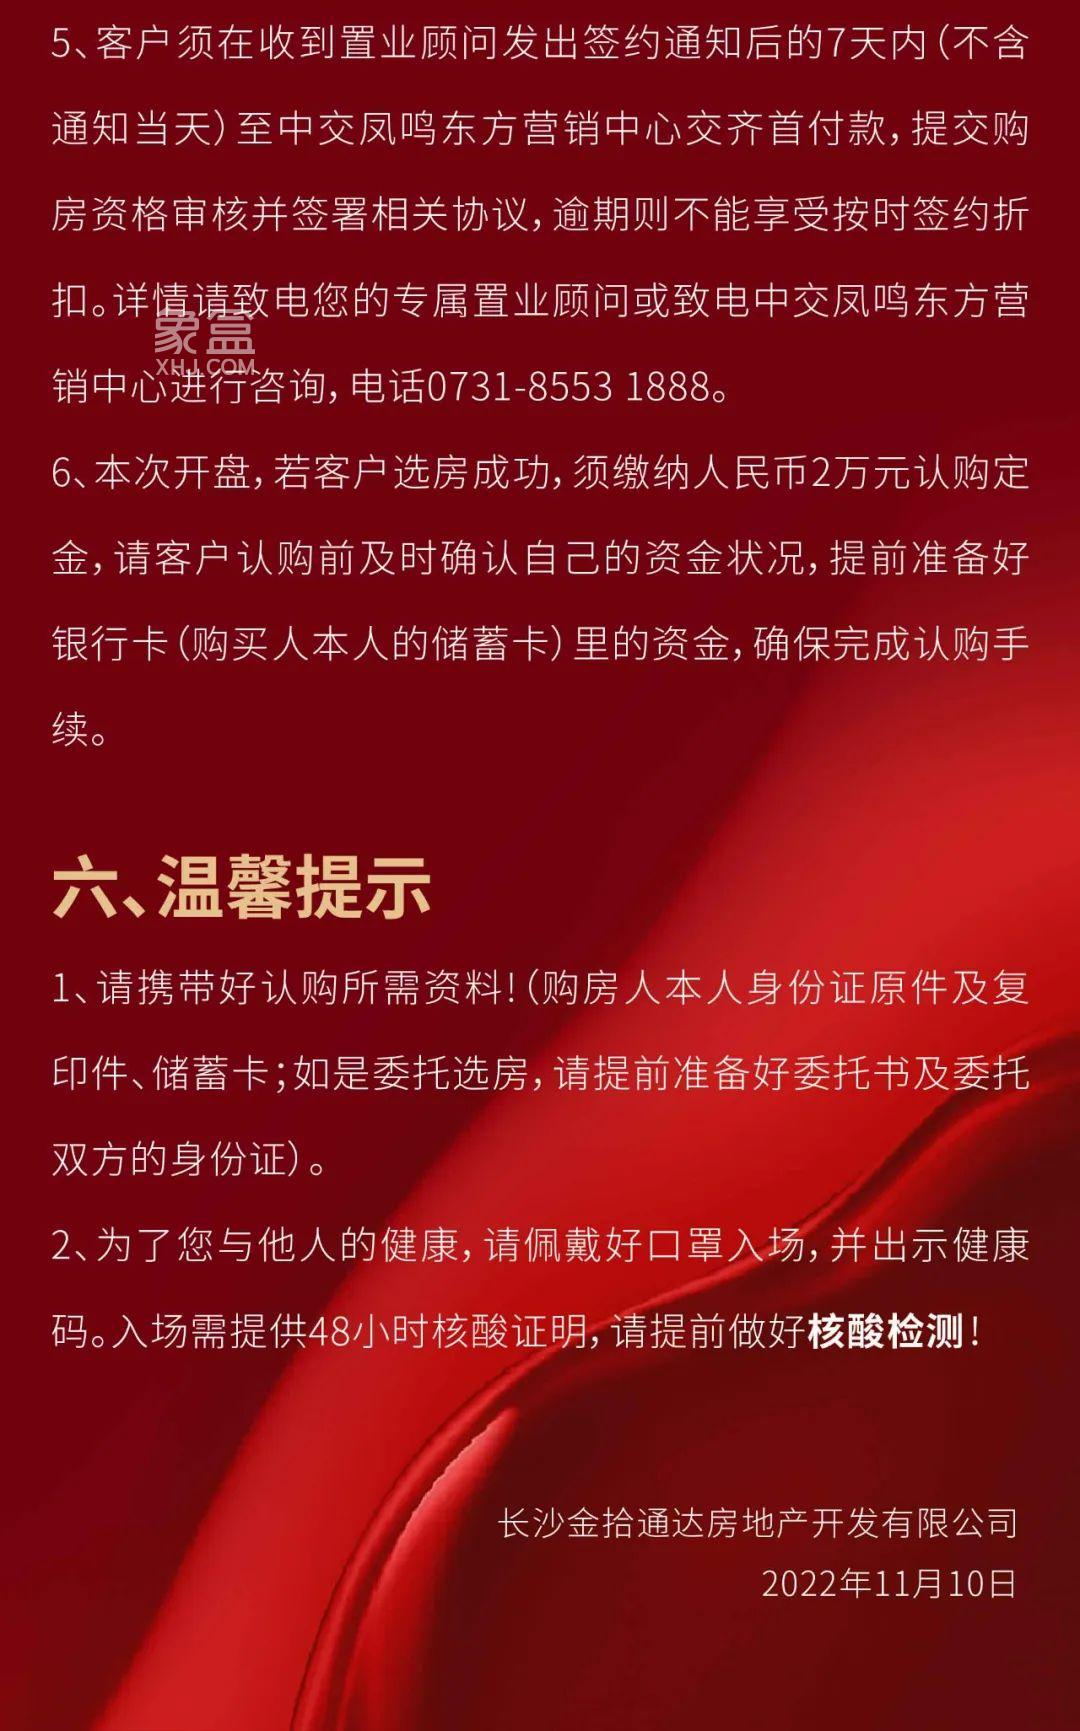 11月12日中交凤鸣东方1、9栋毛坯房首开公告